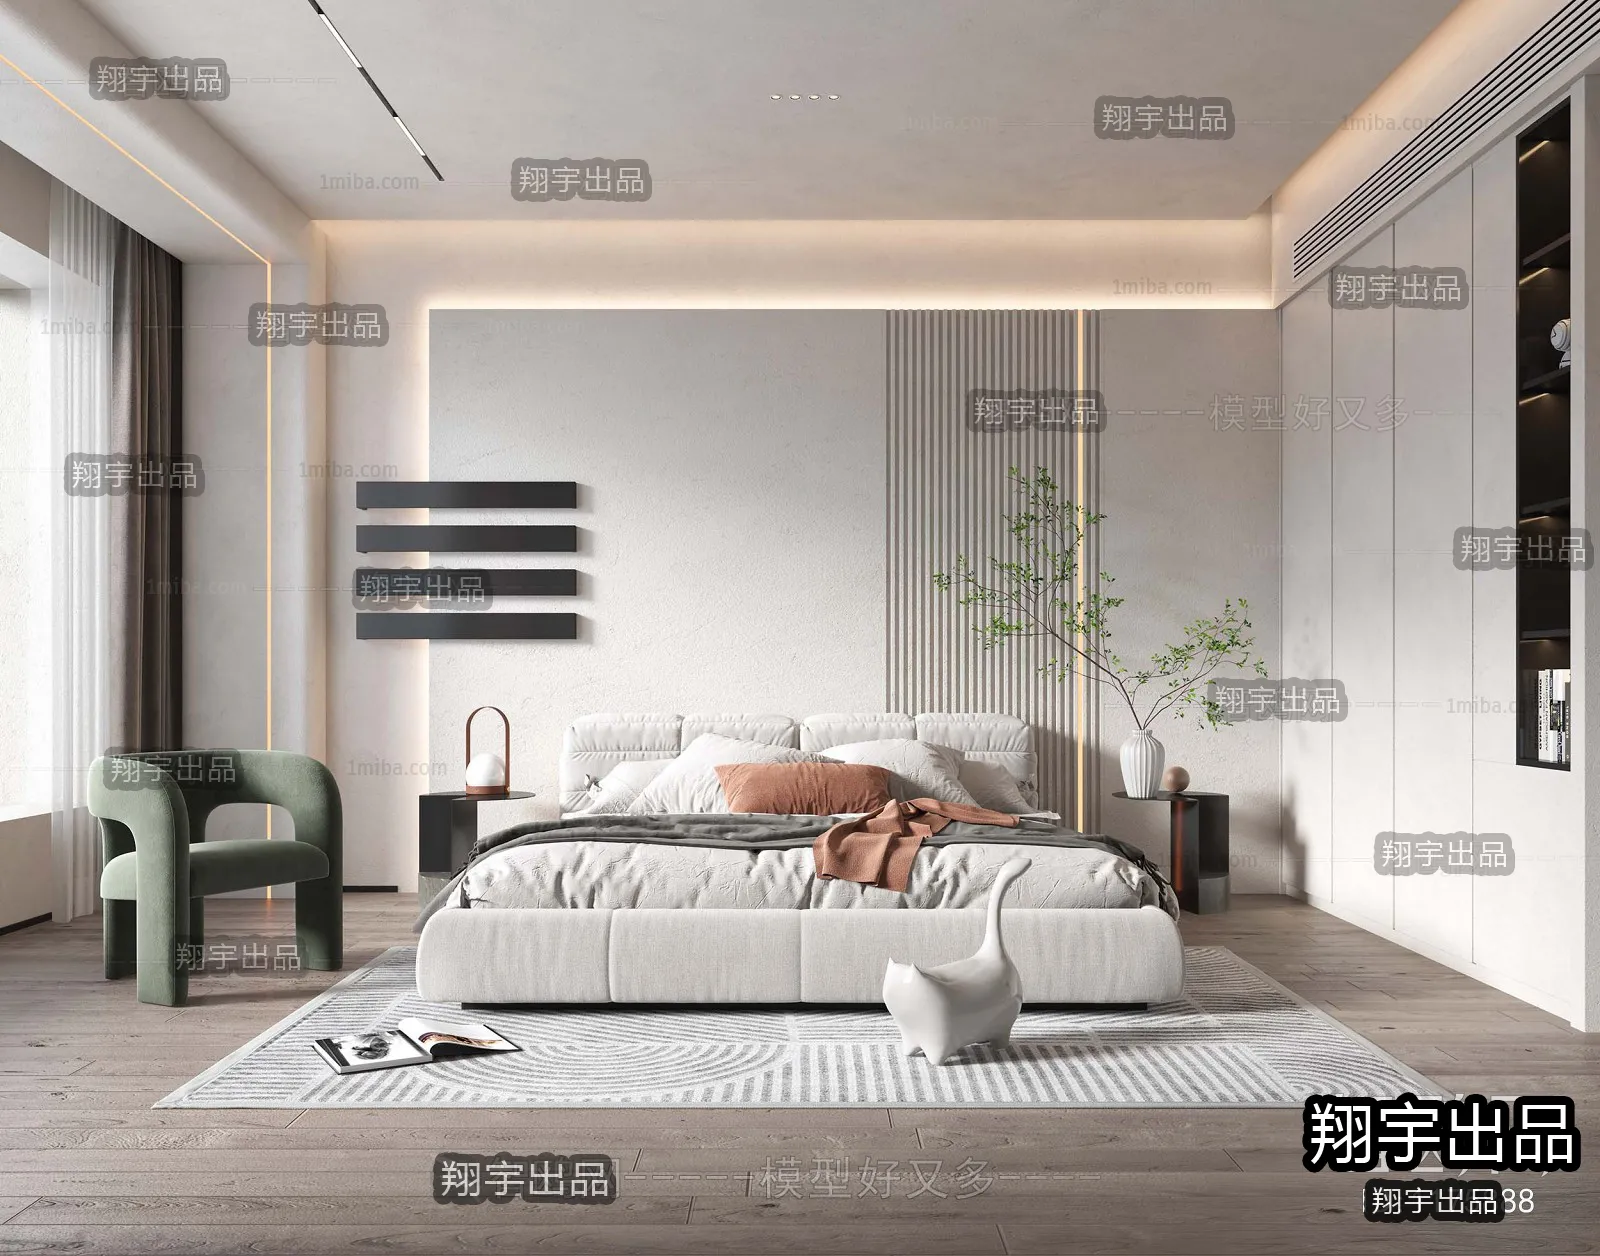 Bedroom – Modern Interior Design – 3D Models – 026